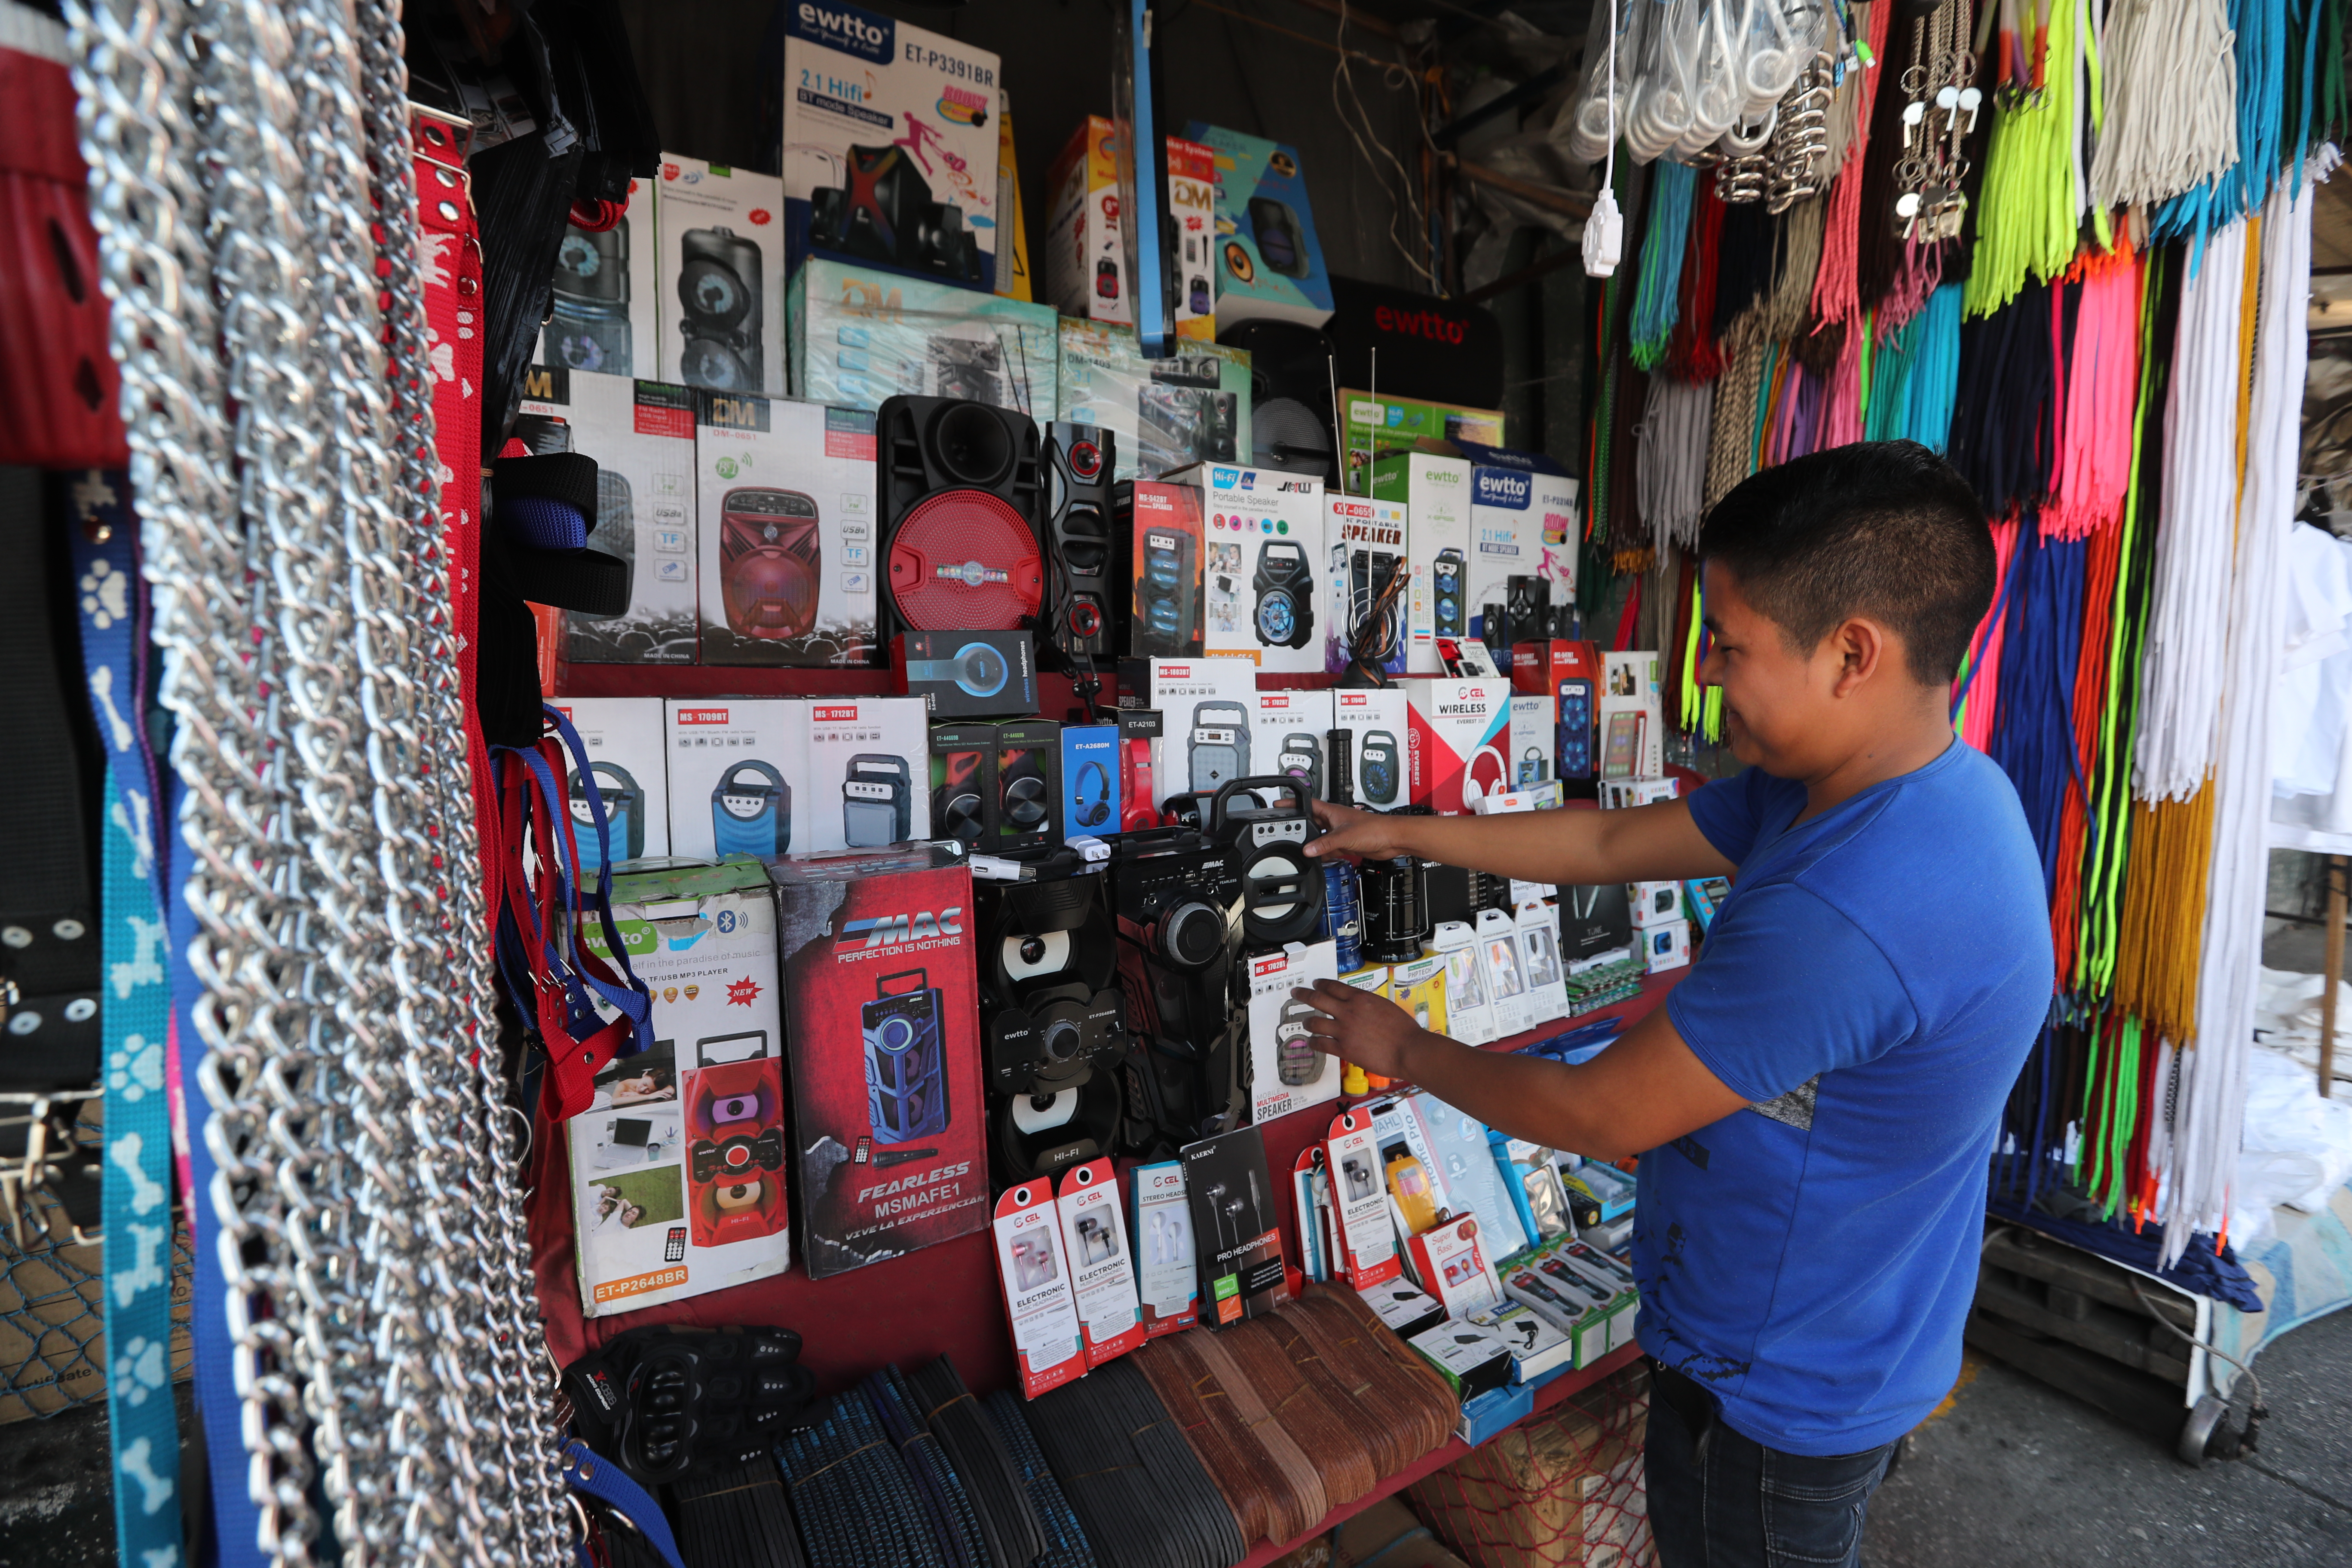 Julio Vicente, de 18 años, vende electrodomésticos sencillos en un sector de El Guarda. Asegura que desde el lunes pasado solo logra vender "lo de la comida" al día. (Foto Prensa Libre: Érick Ávila)